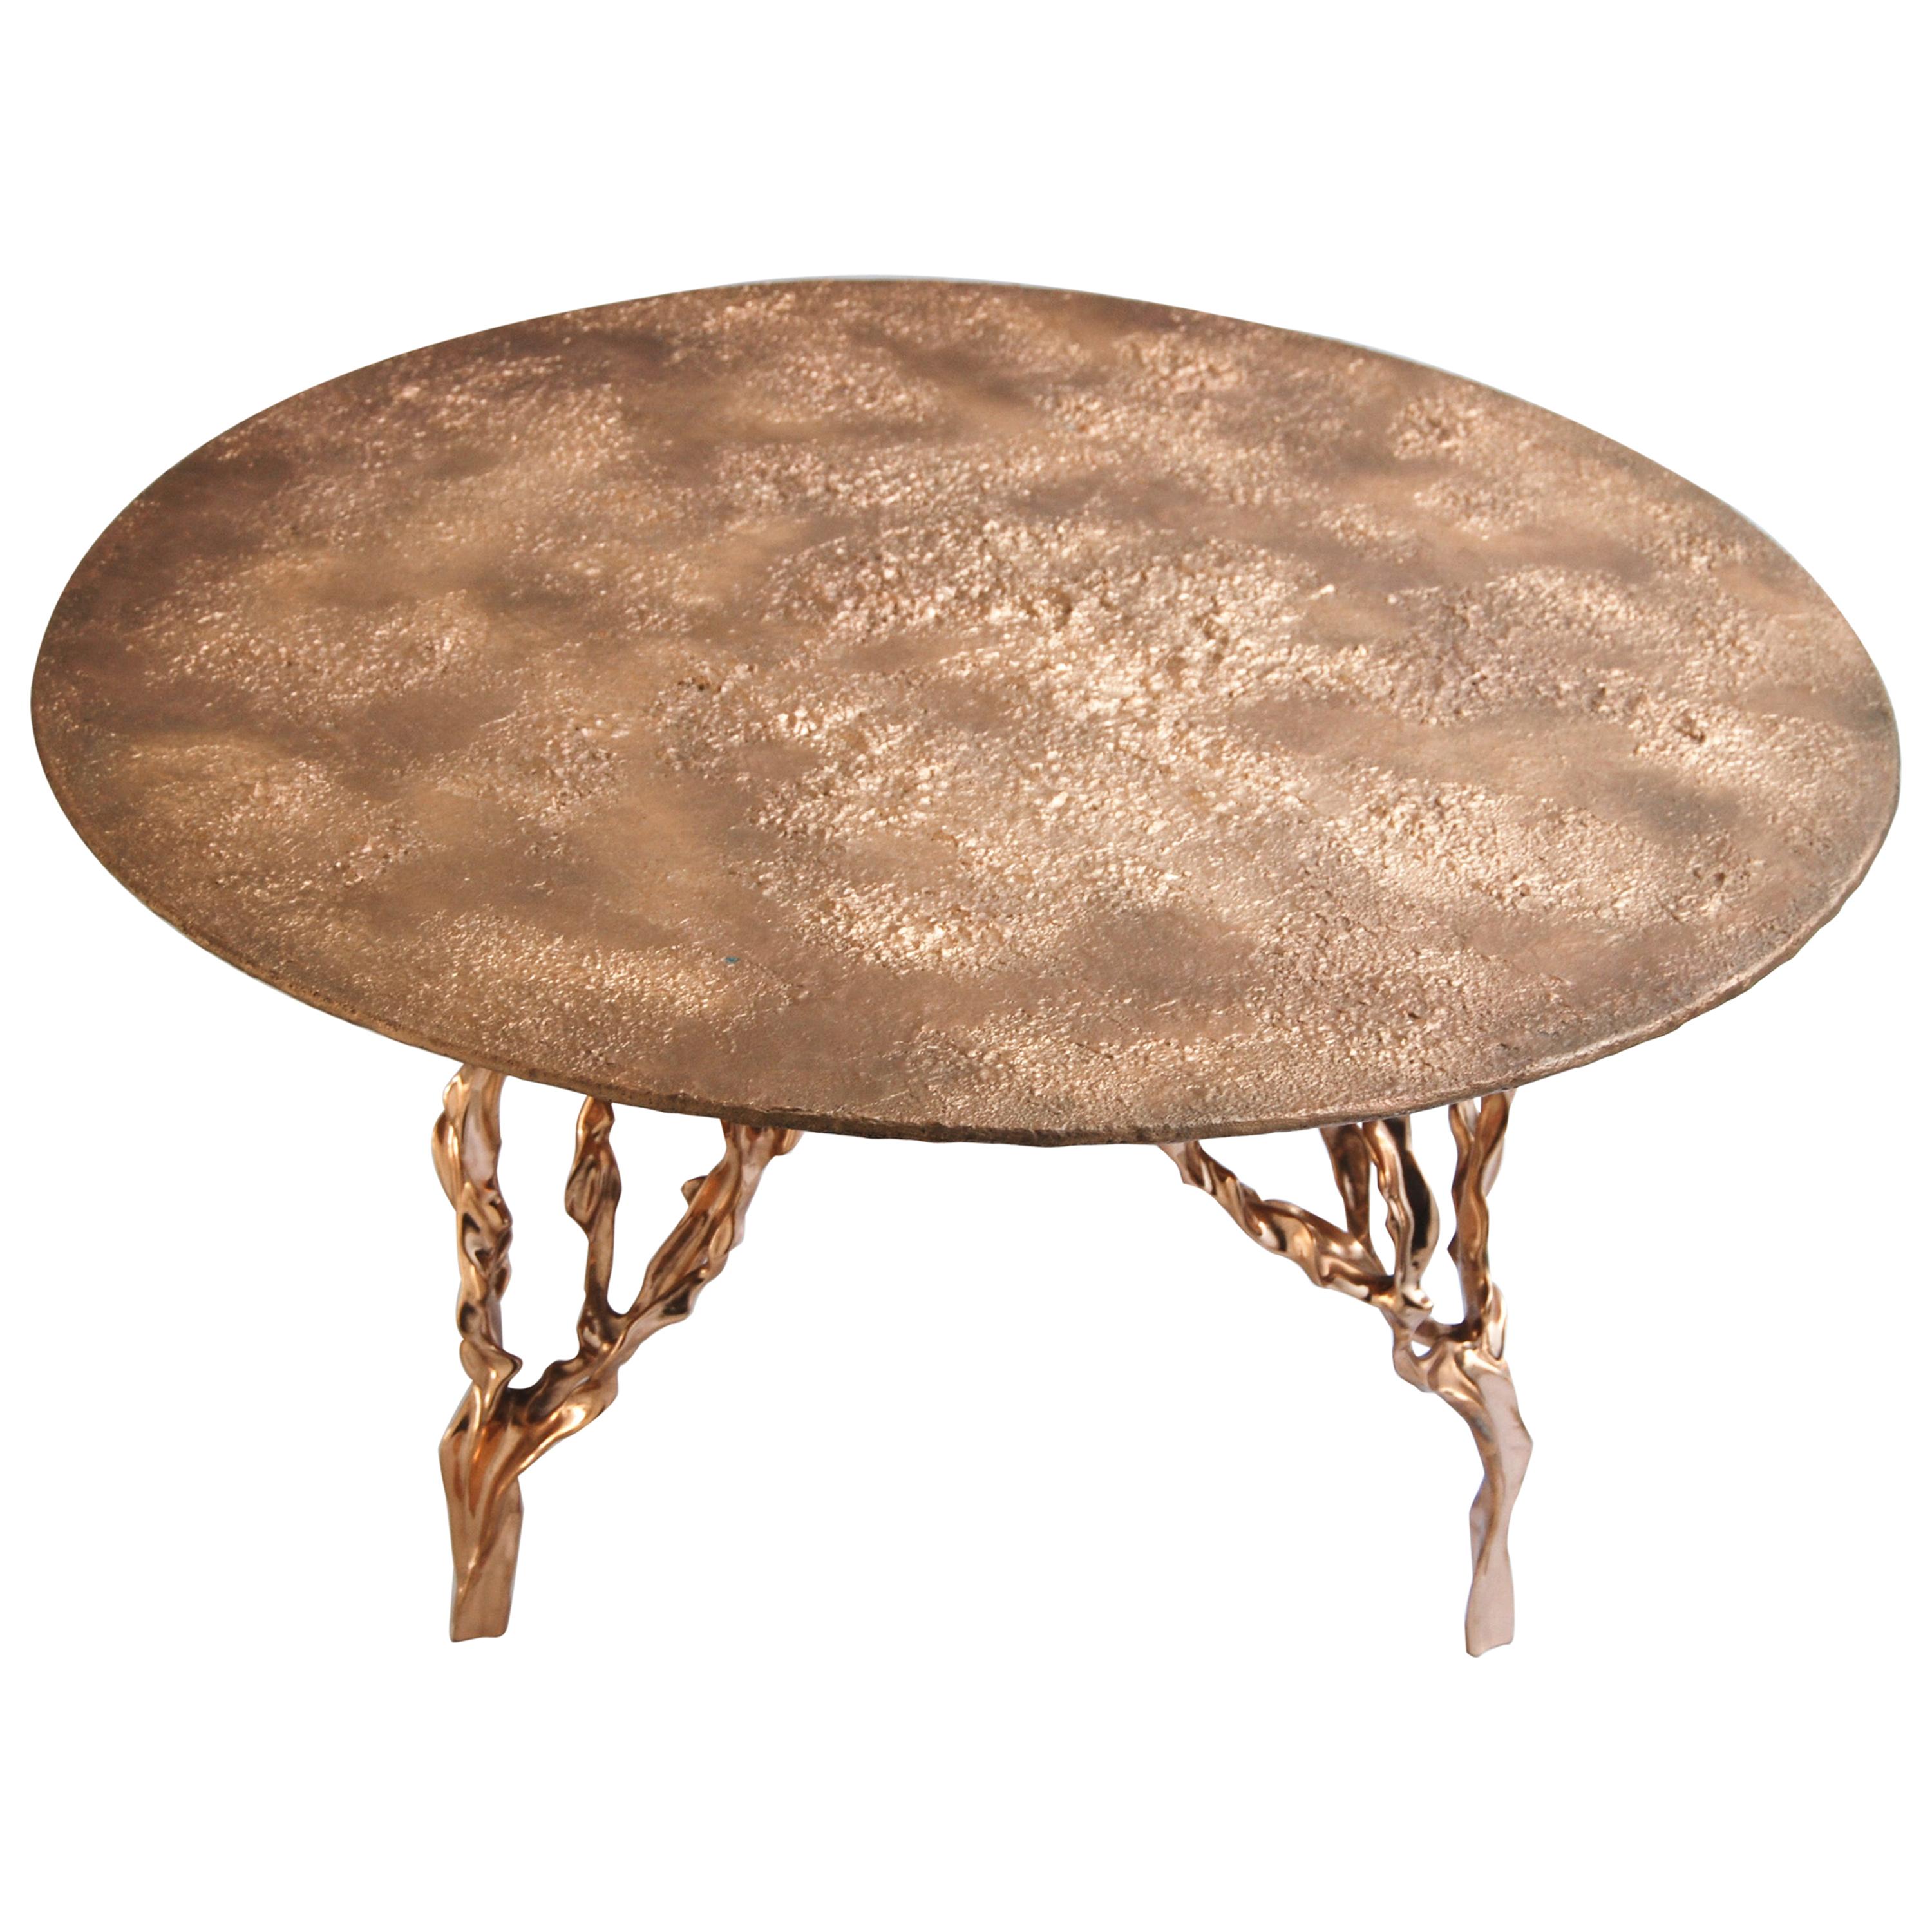 Polished Bronze Table by FAKASAKA Design